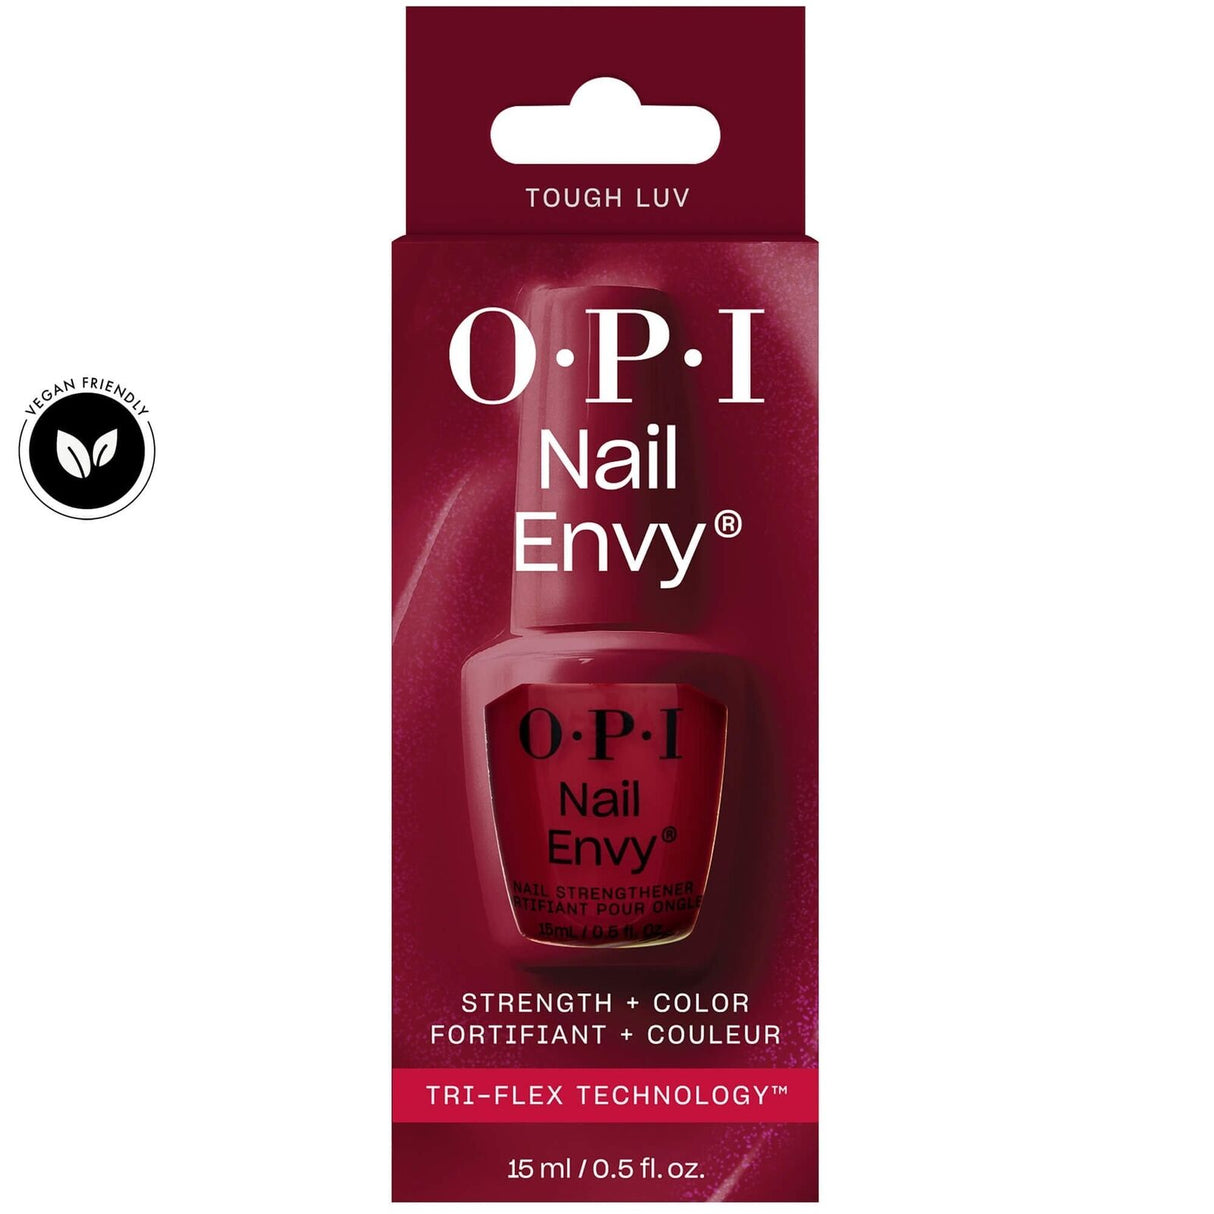 OPI Nail Envy Nail Treatment Tri Flex Technology (15ml) Tough Luv